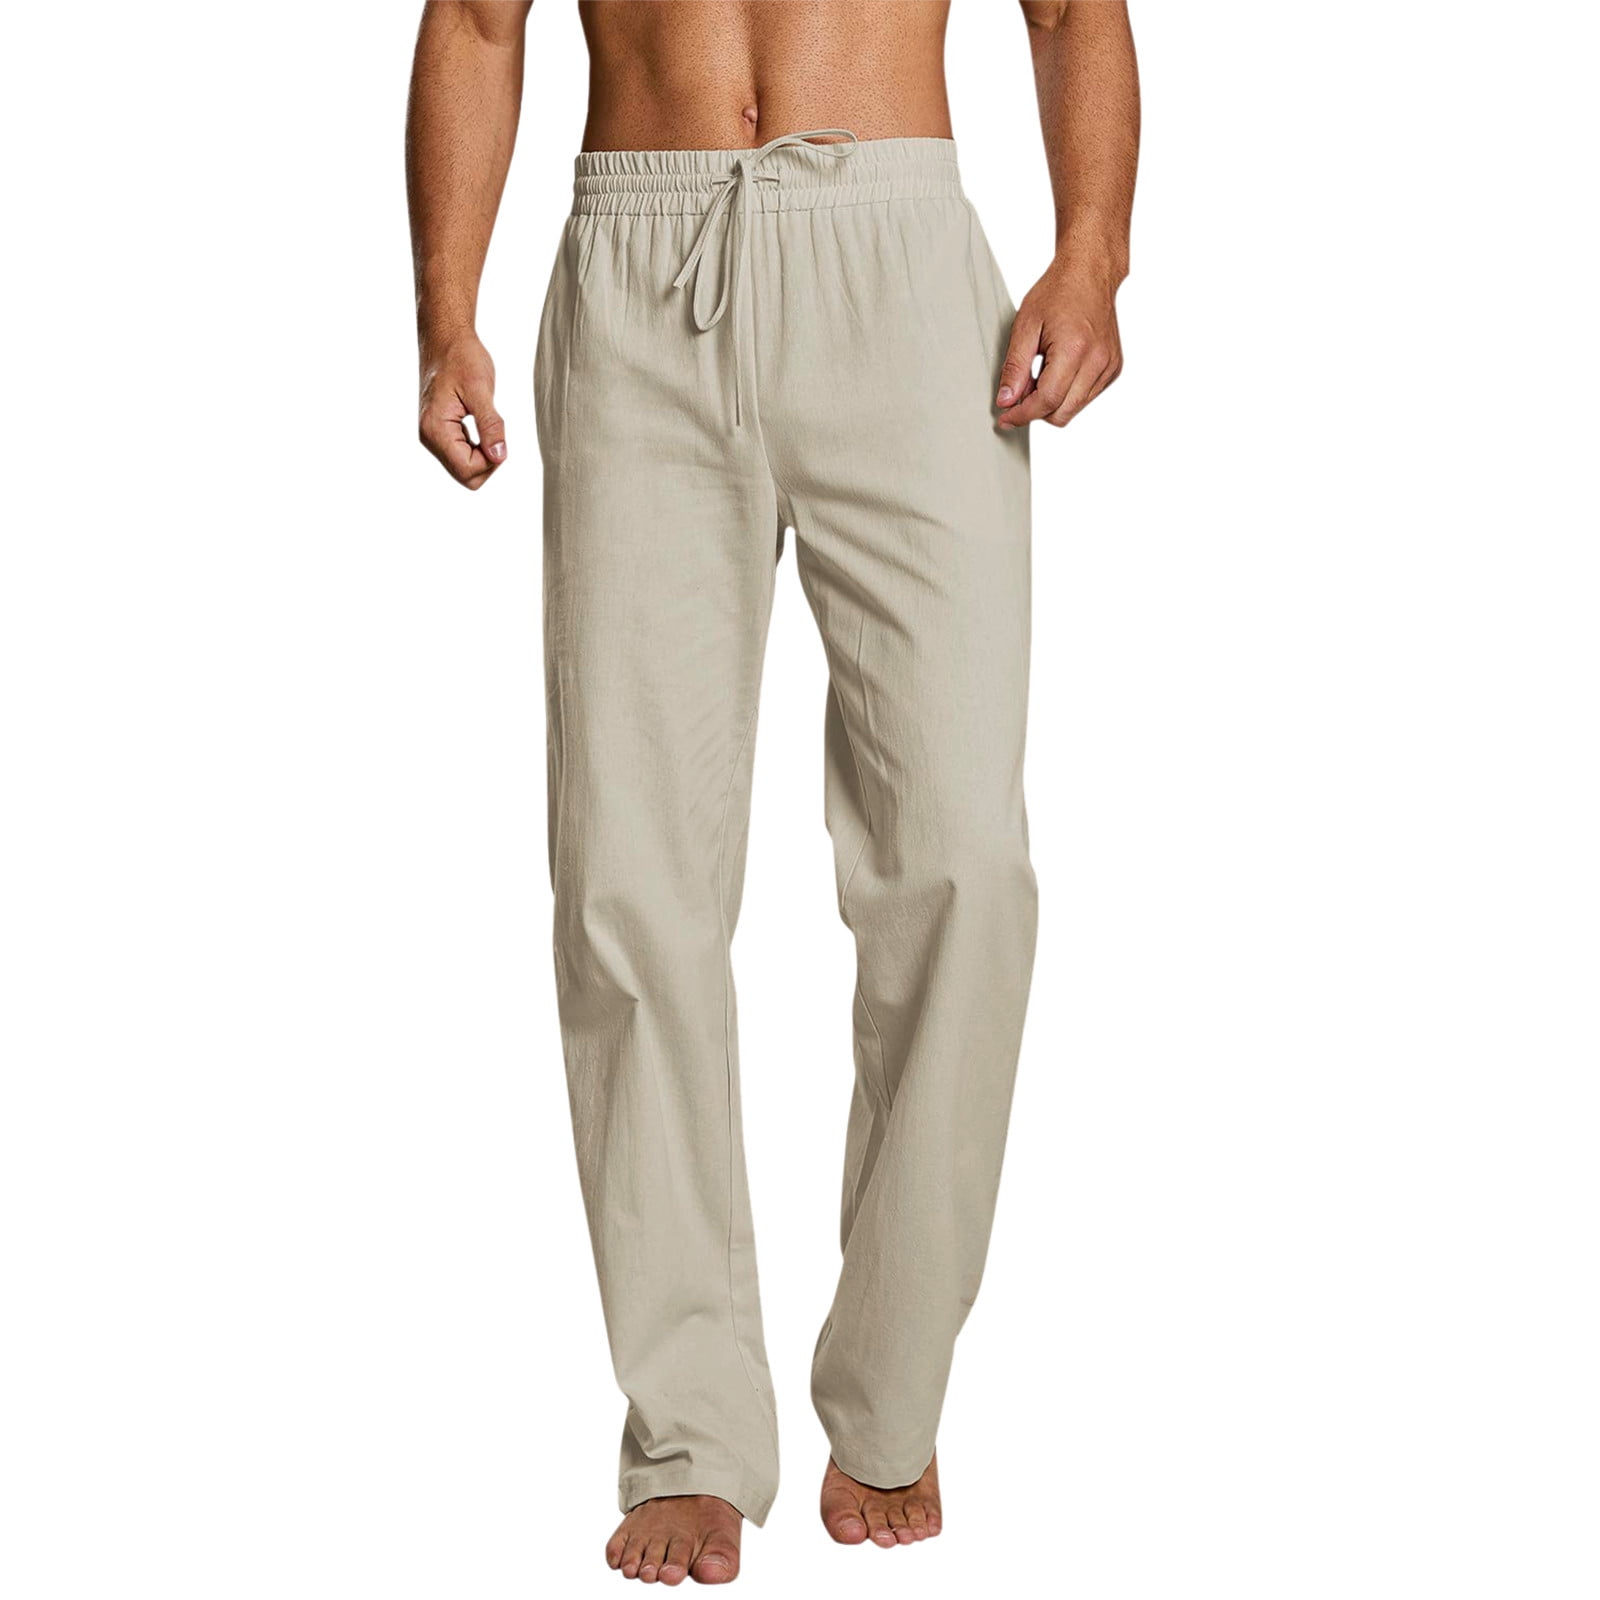 Aayomet Sweat Pants For Man Men's Sweatpants, EcoSmart